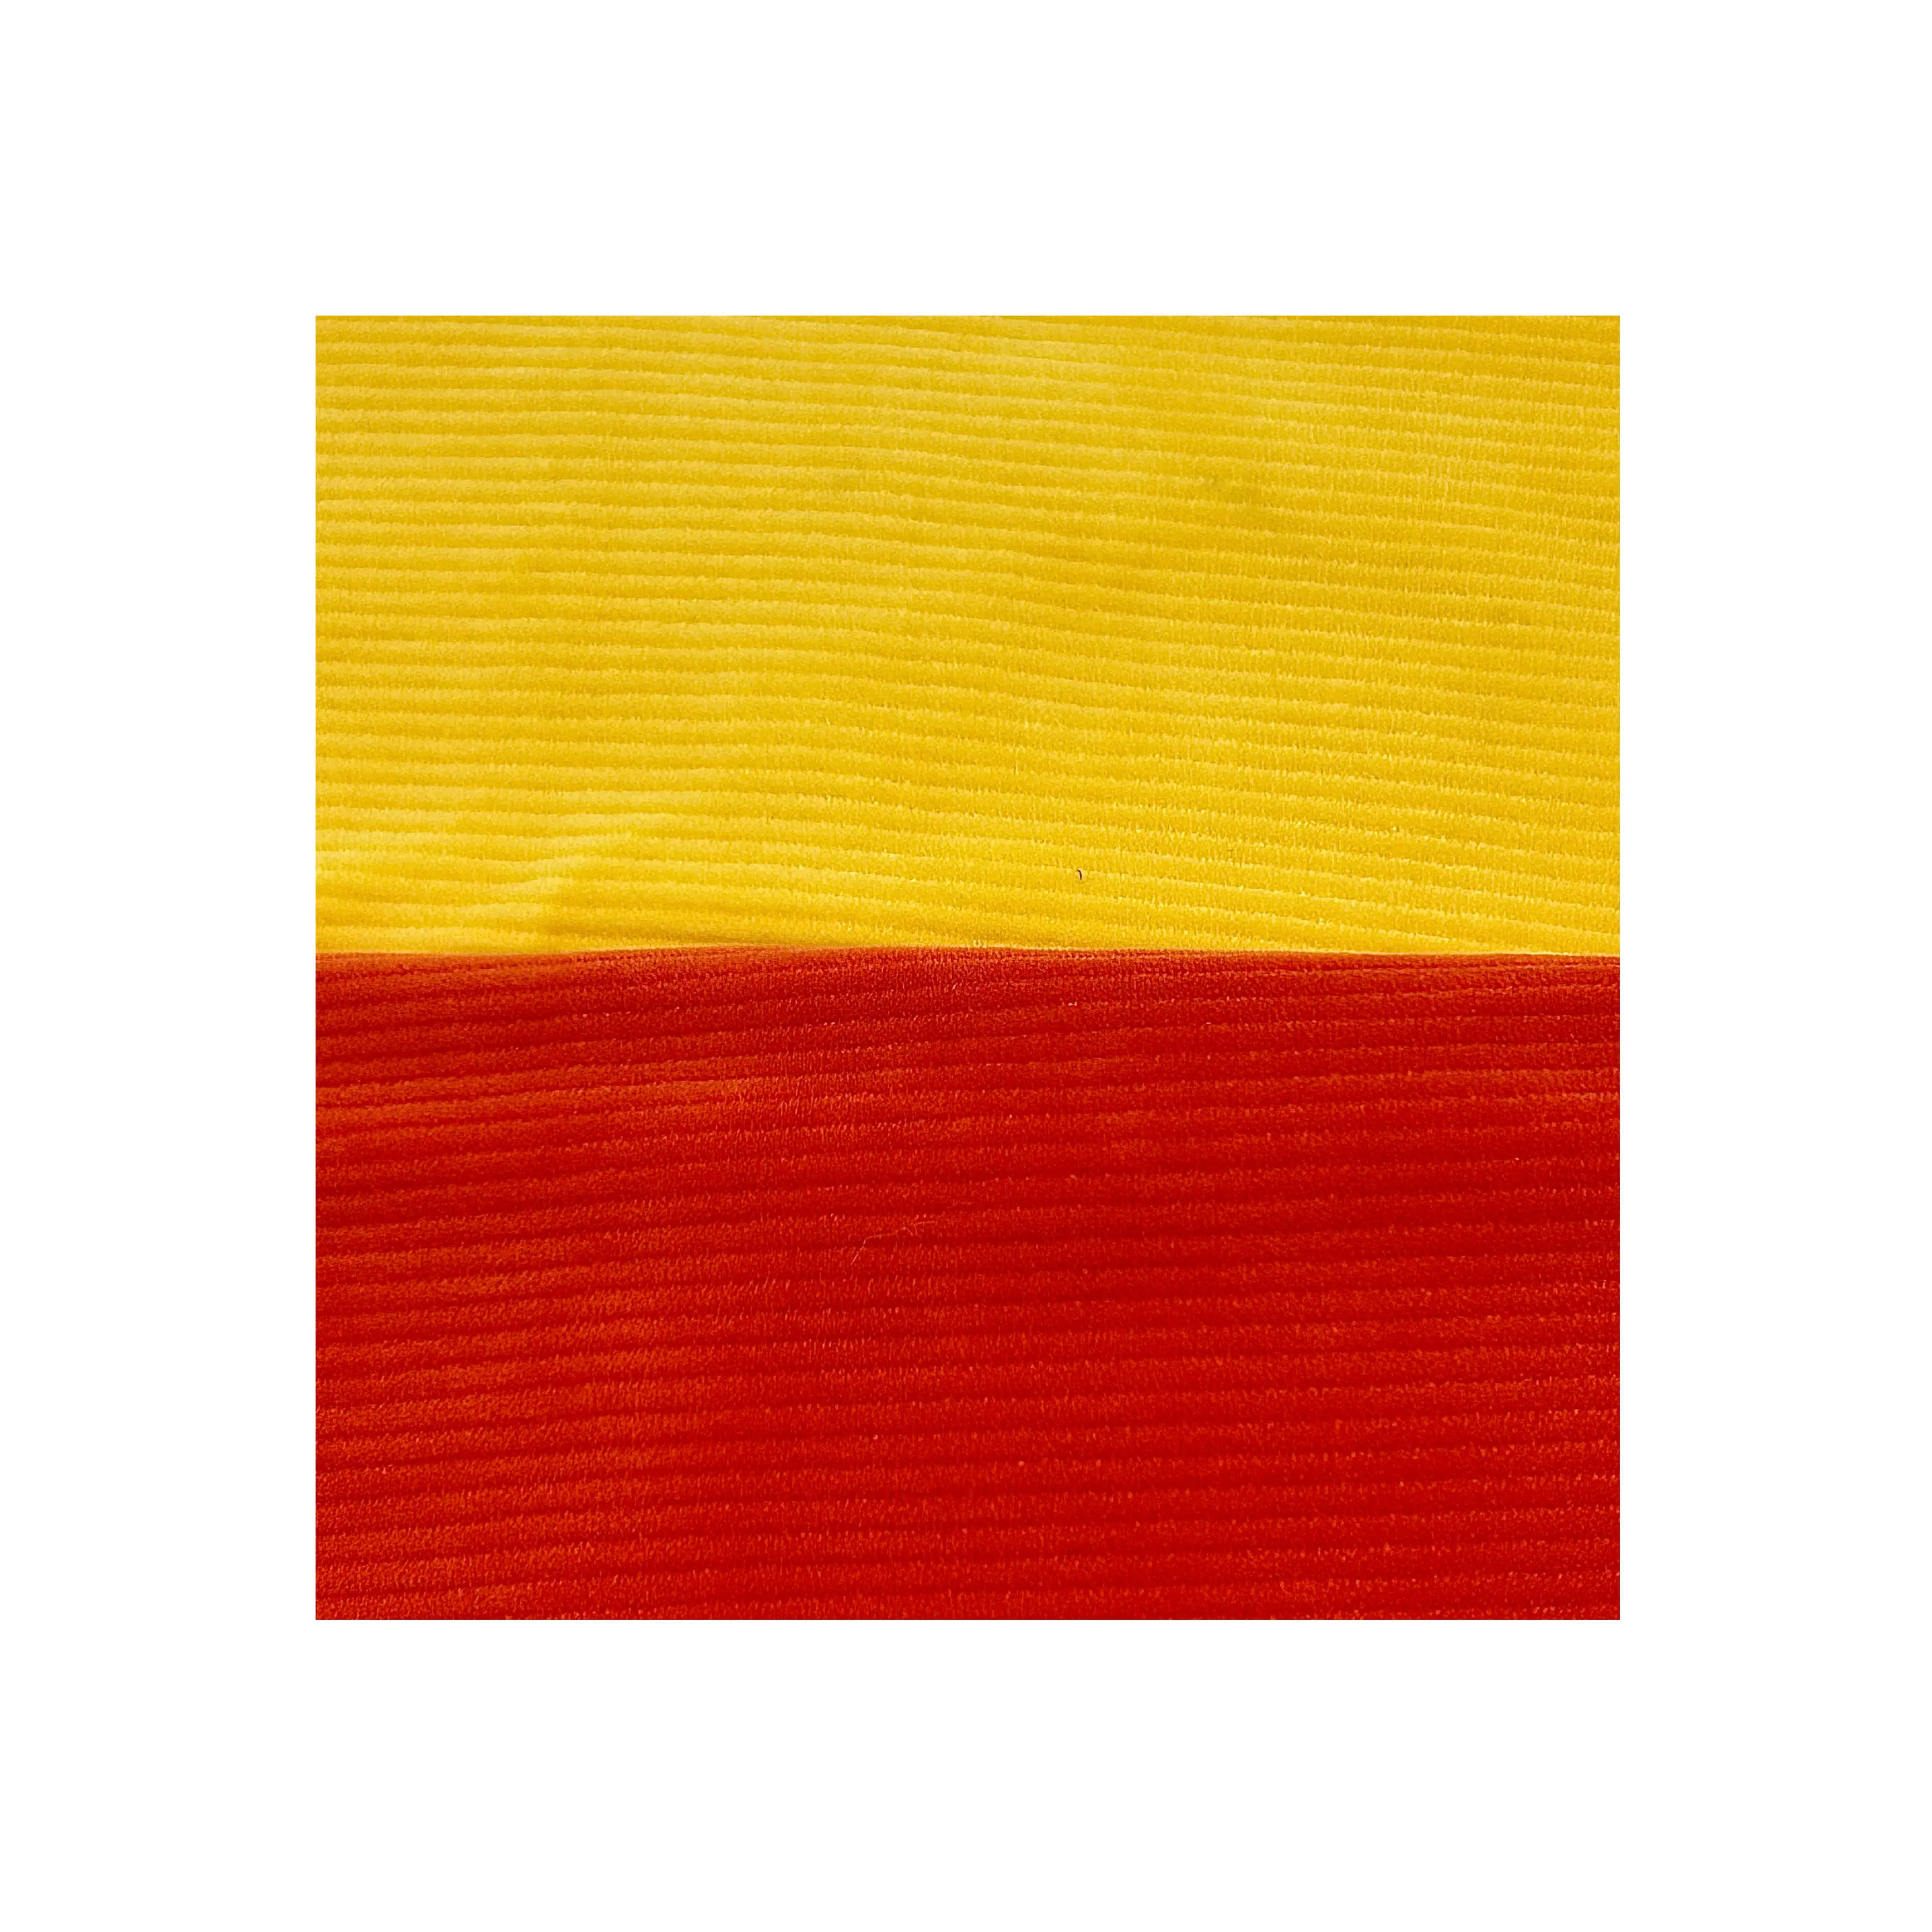 Cao Cấp Chống Nhăn 4 Cách Căng Spandex Màu Đỏ Và Trắng Sọc Vải Cho Quần Áo